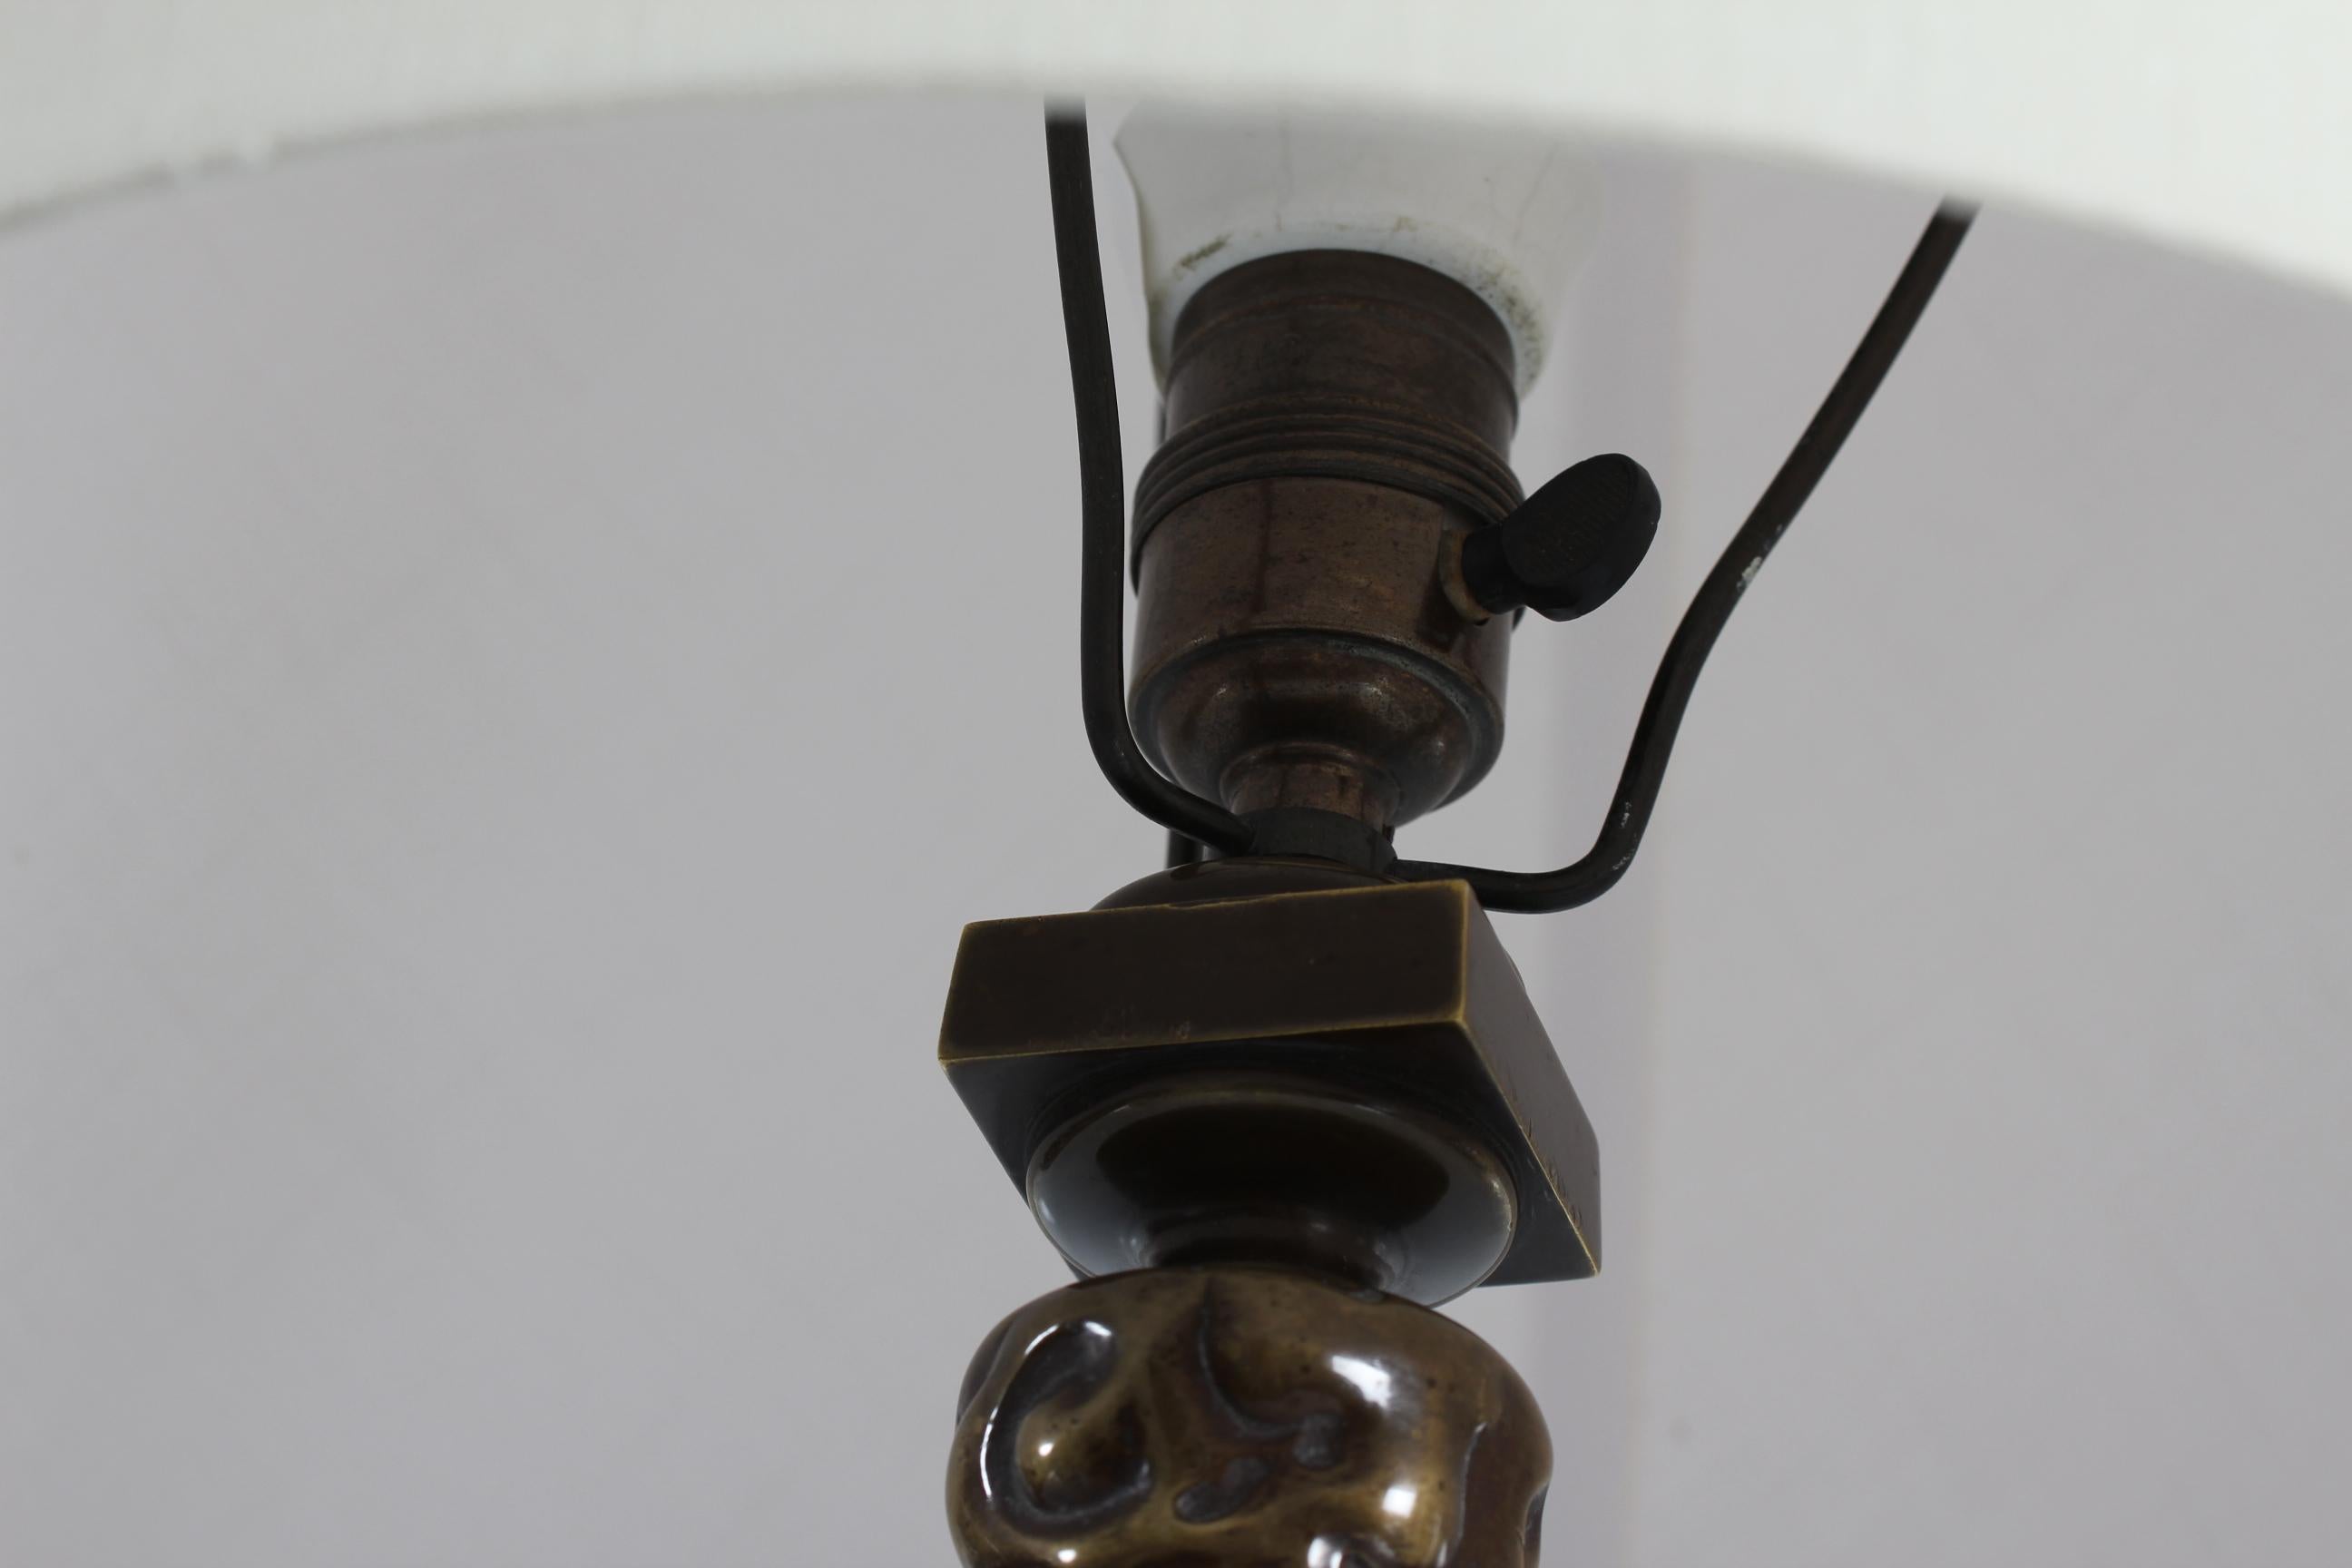 Seltene und hochwertige Jugendstil-Tischlampe, entworfen im späten 19. Jahrhundert von dem dänischen Architekten und Designer Thorvald Bindesbøll (1846-1908).
Der Lampenfuß ist aus patinierter Bronze mit typischen Bindesbøll-Ornamenten auf einer